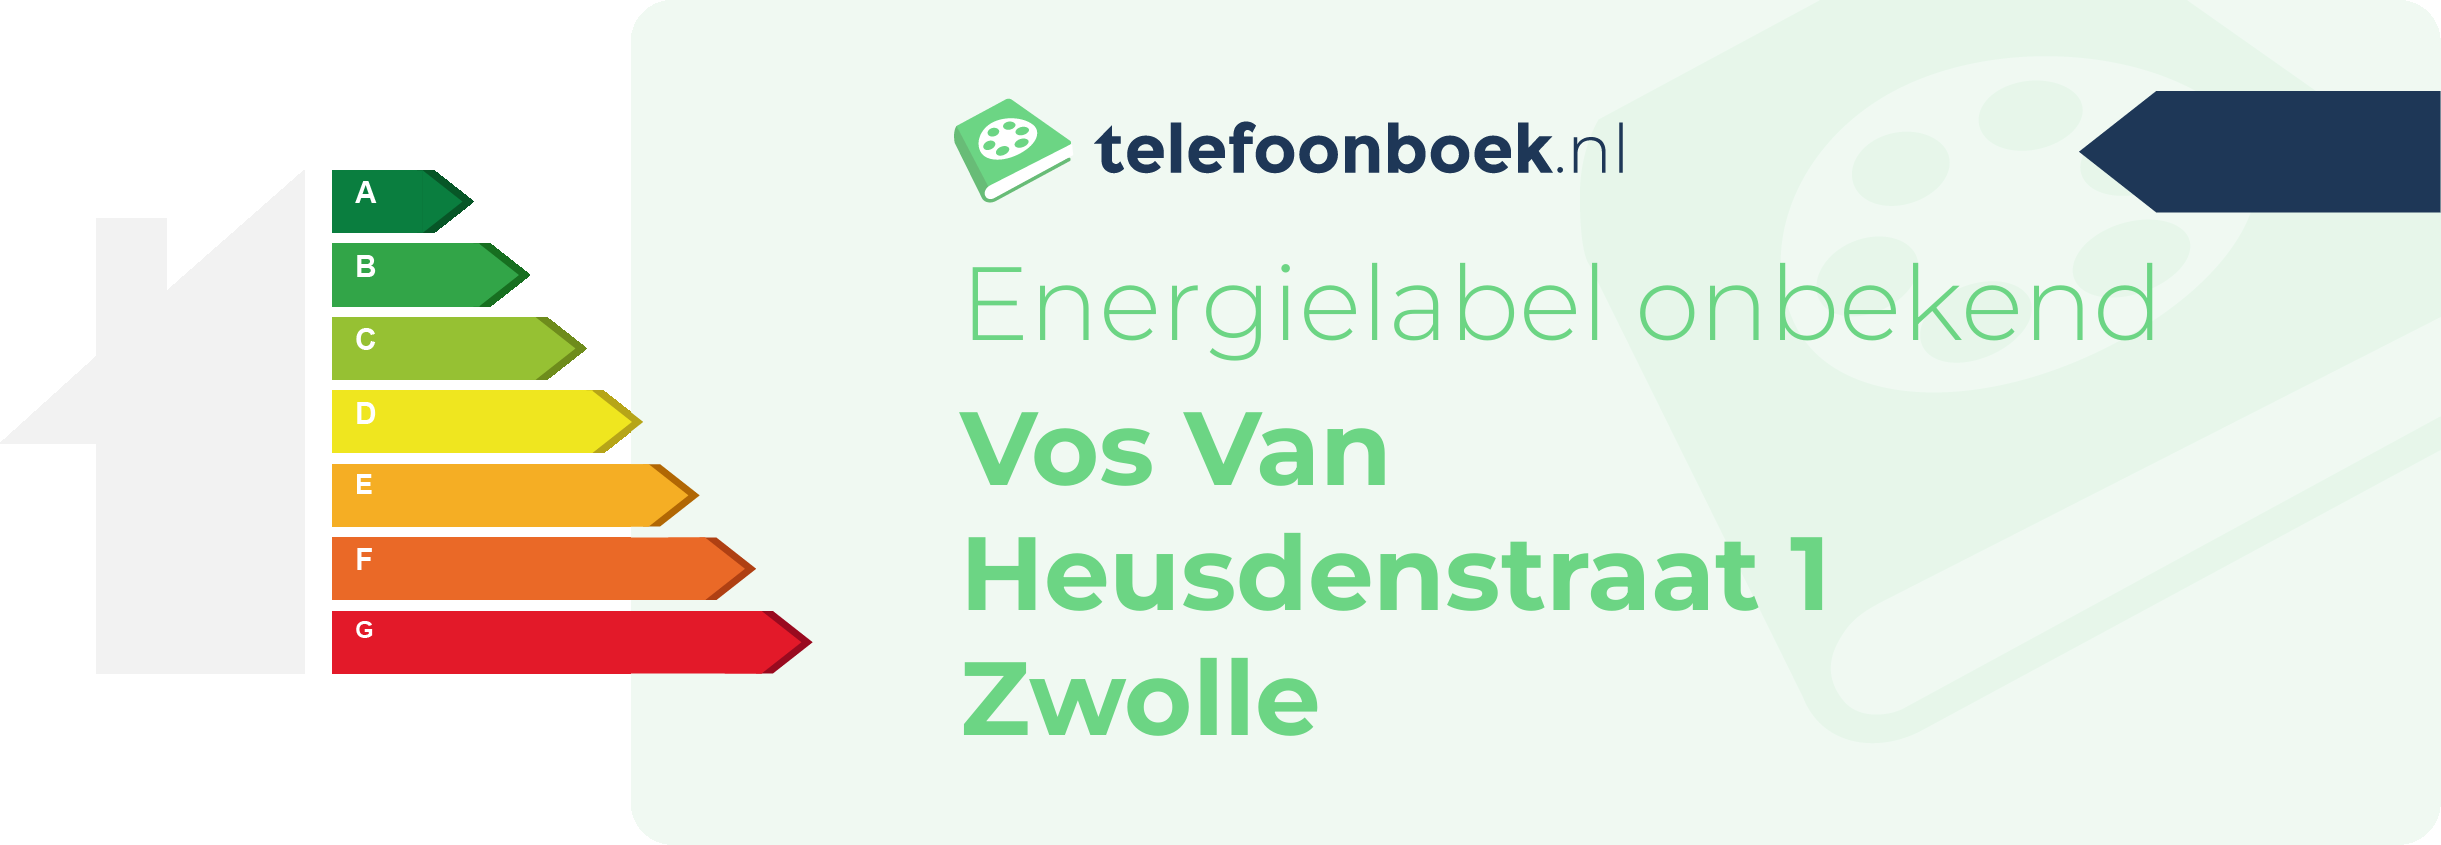 Energielabel Vos Van Heusdenstraat 1 Zwolle